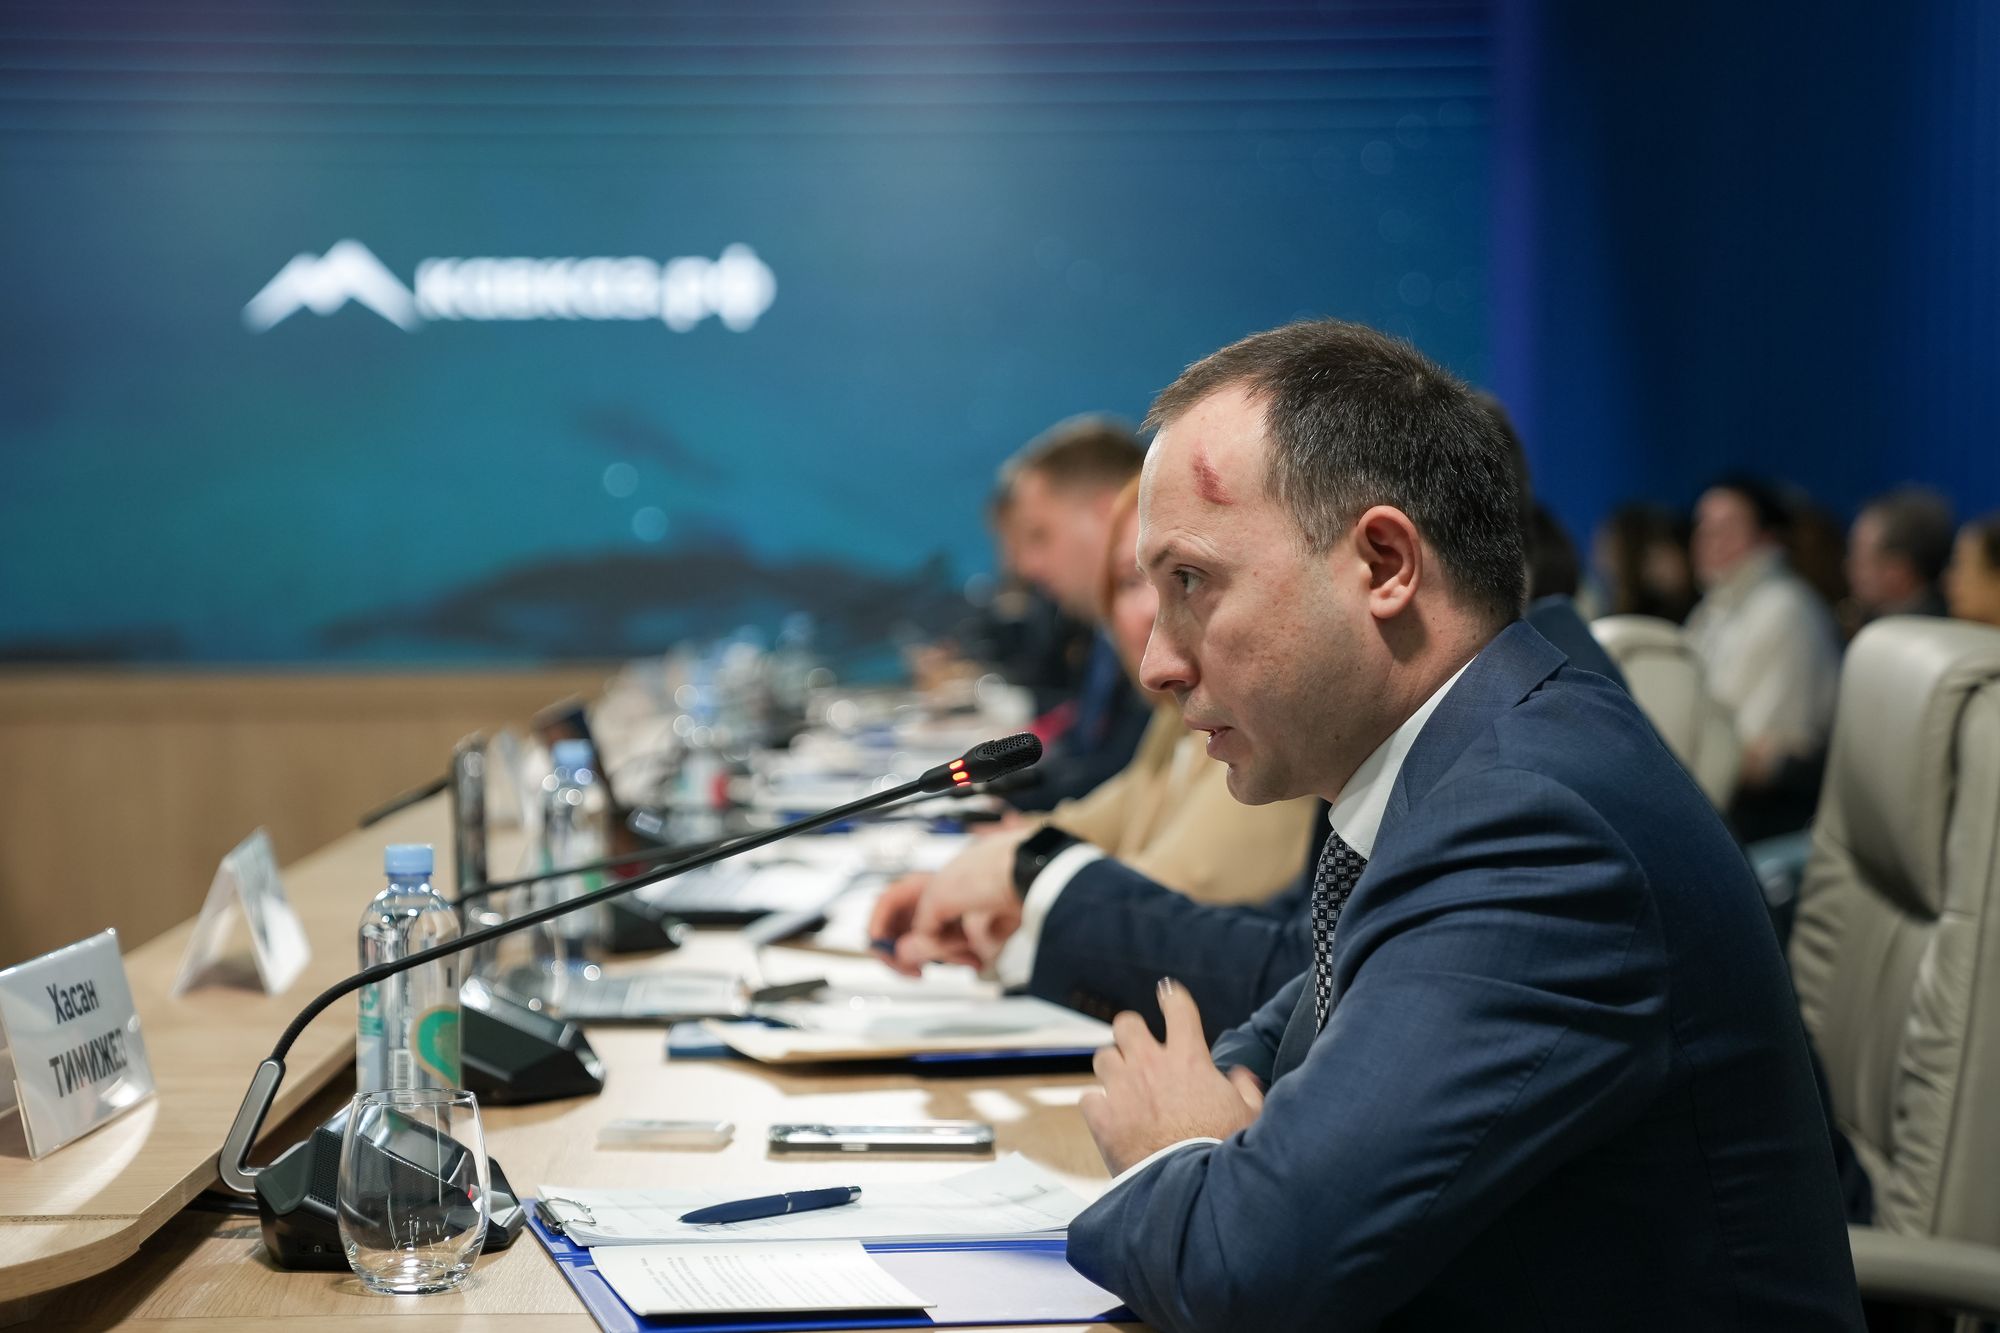 Более 60 млрд рублей инвестиций планируют вложить резиденты в ОЭЗ под управлением Кавказ.РФ